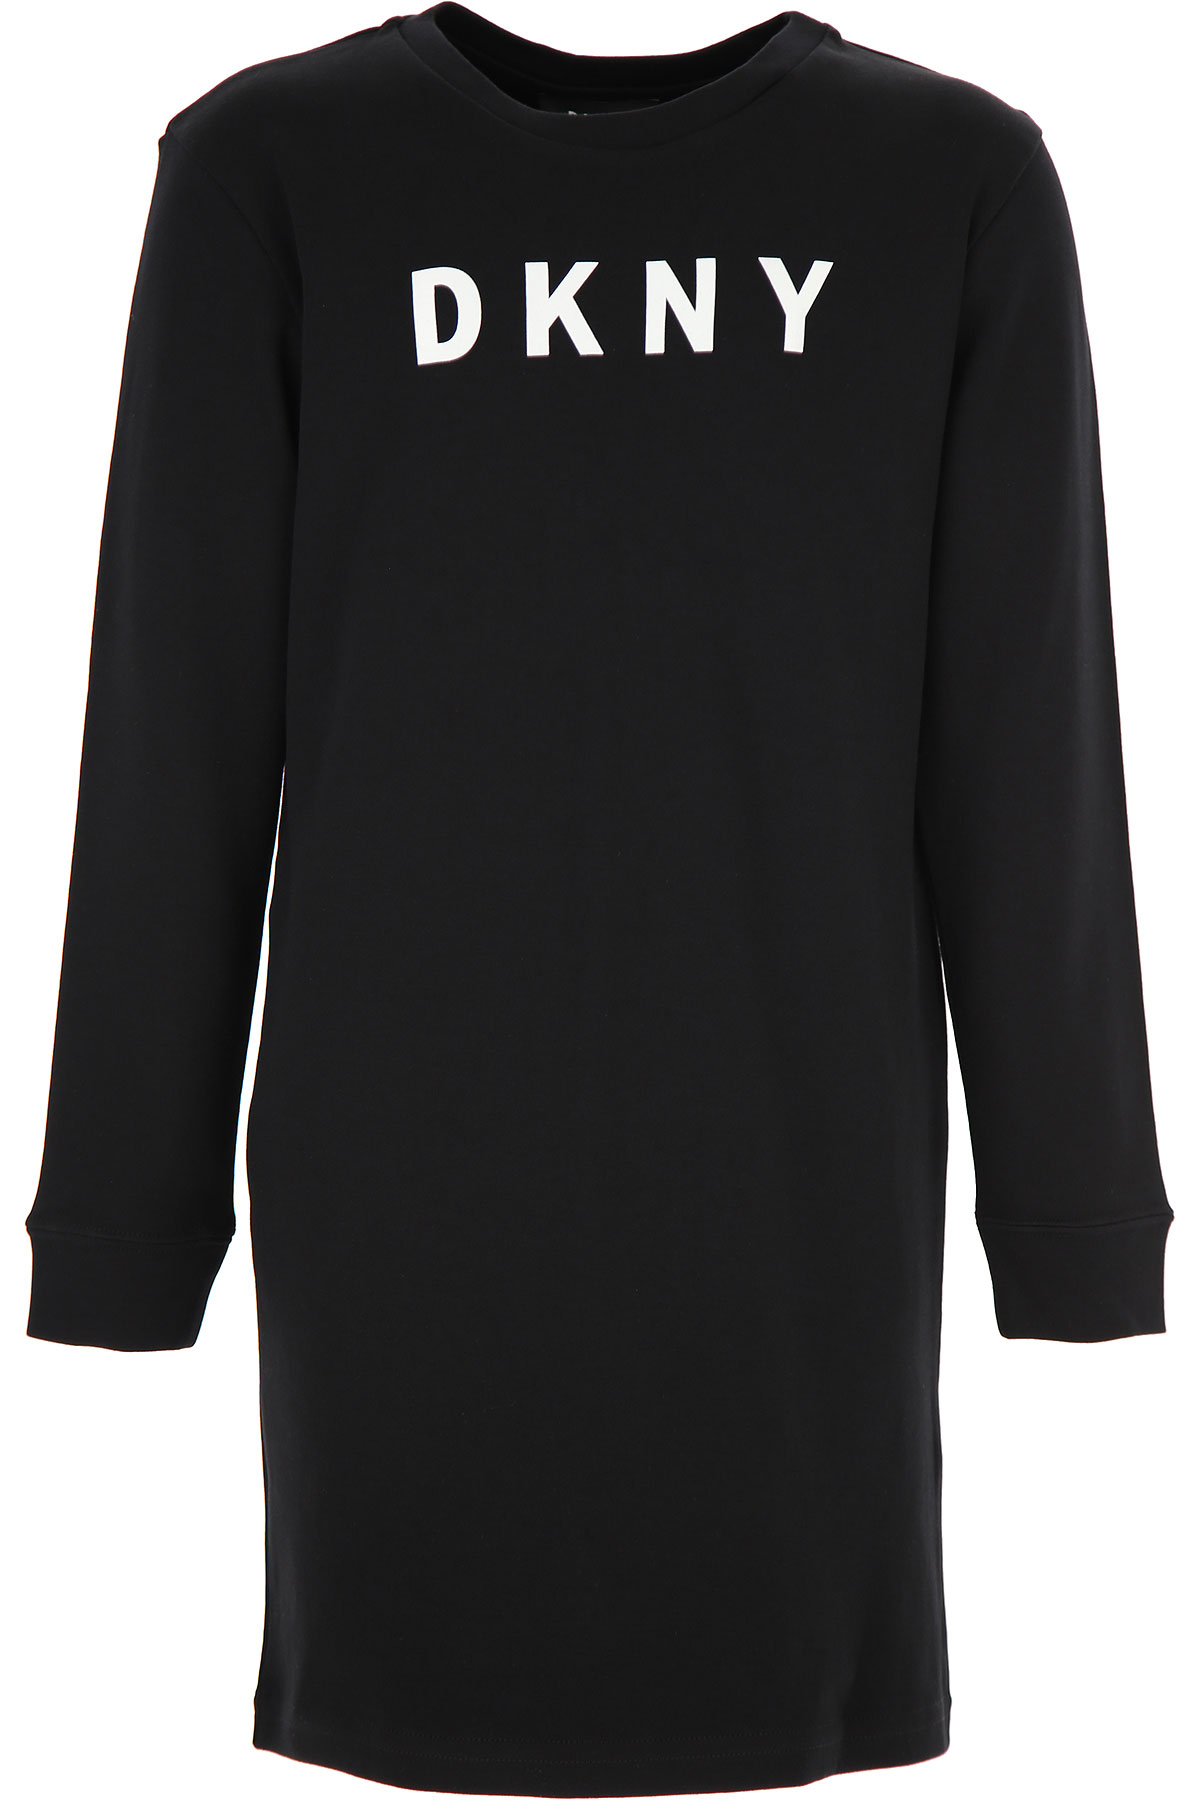 DKNY Kleid für Mädchen Günstig im Sale, Schwarz, Baumwolle, 2017, 10Y 14Y 14Y 16Y 8Y